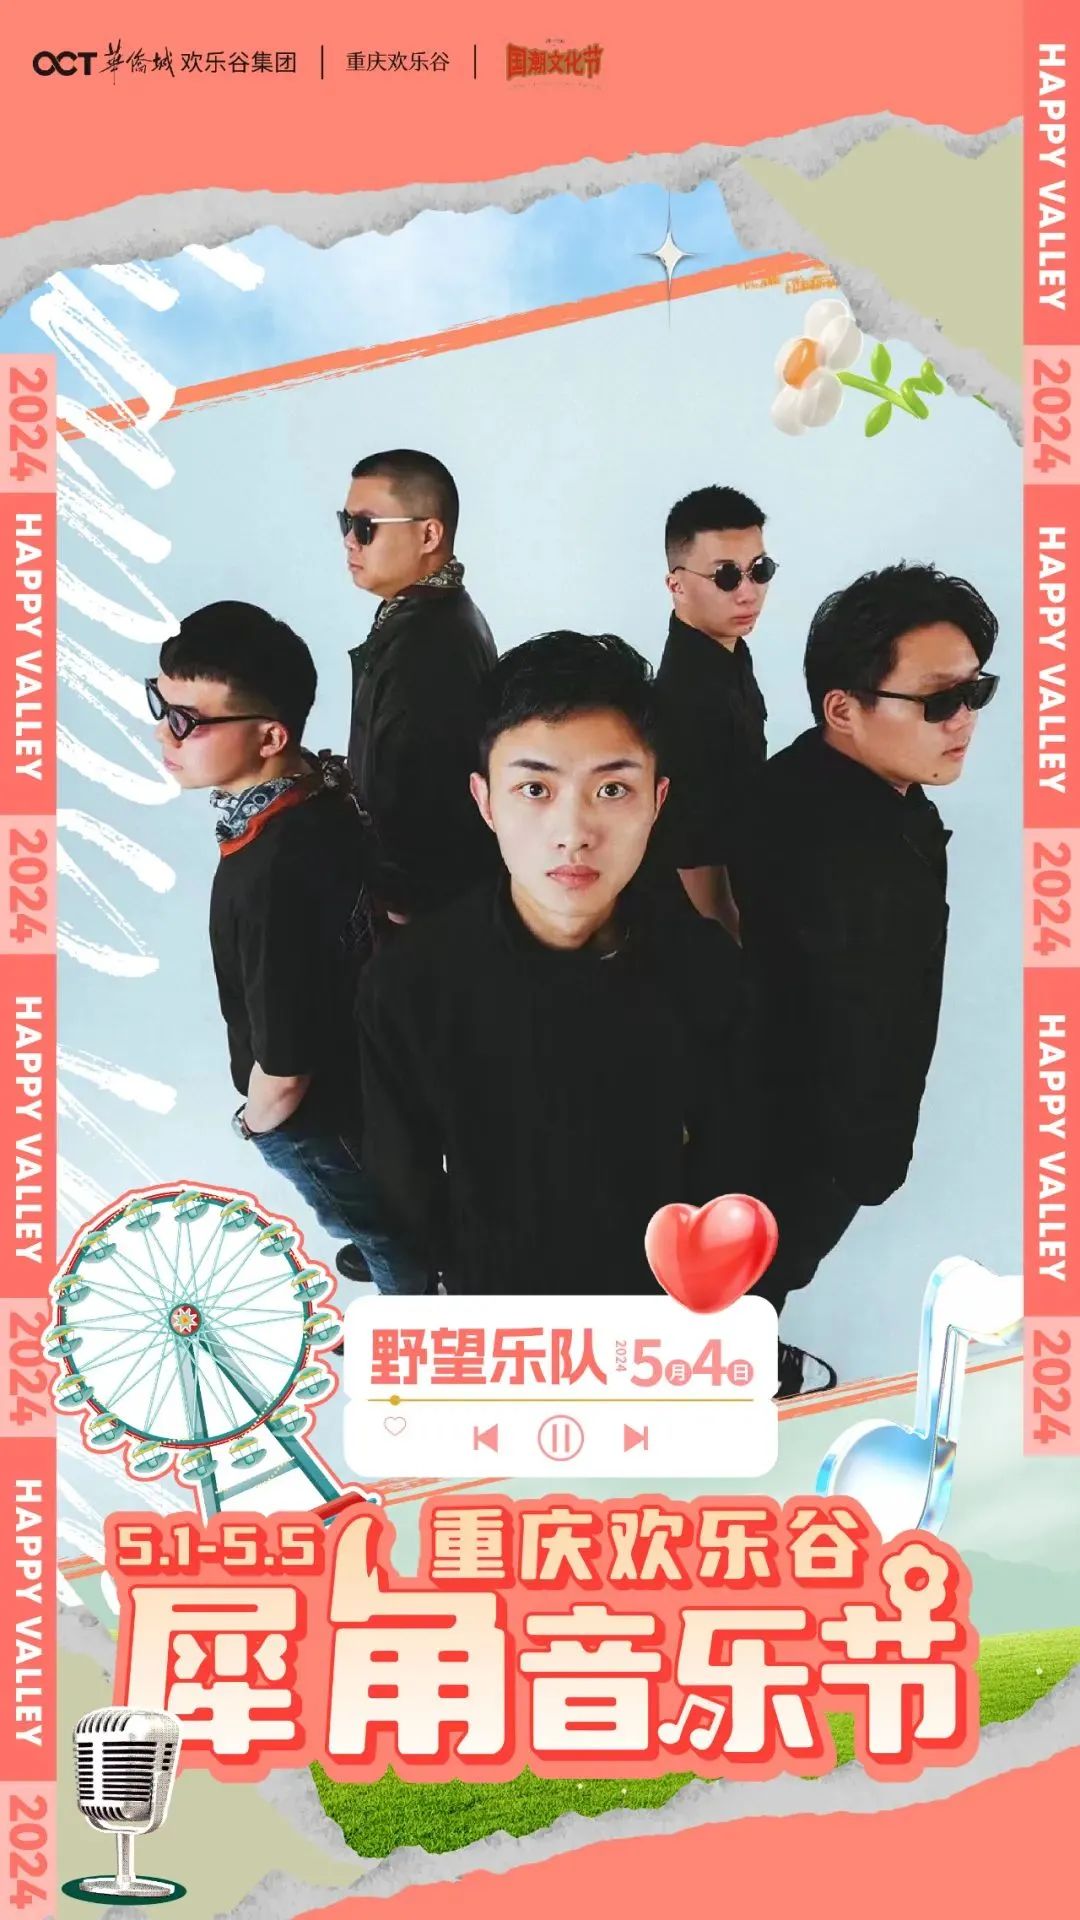 重庆欢乐谷  犀角音乐节开票！